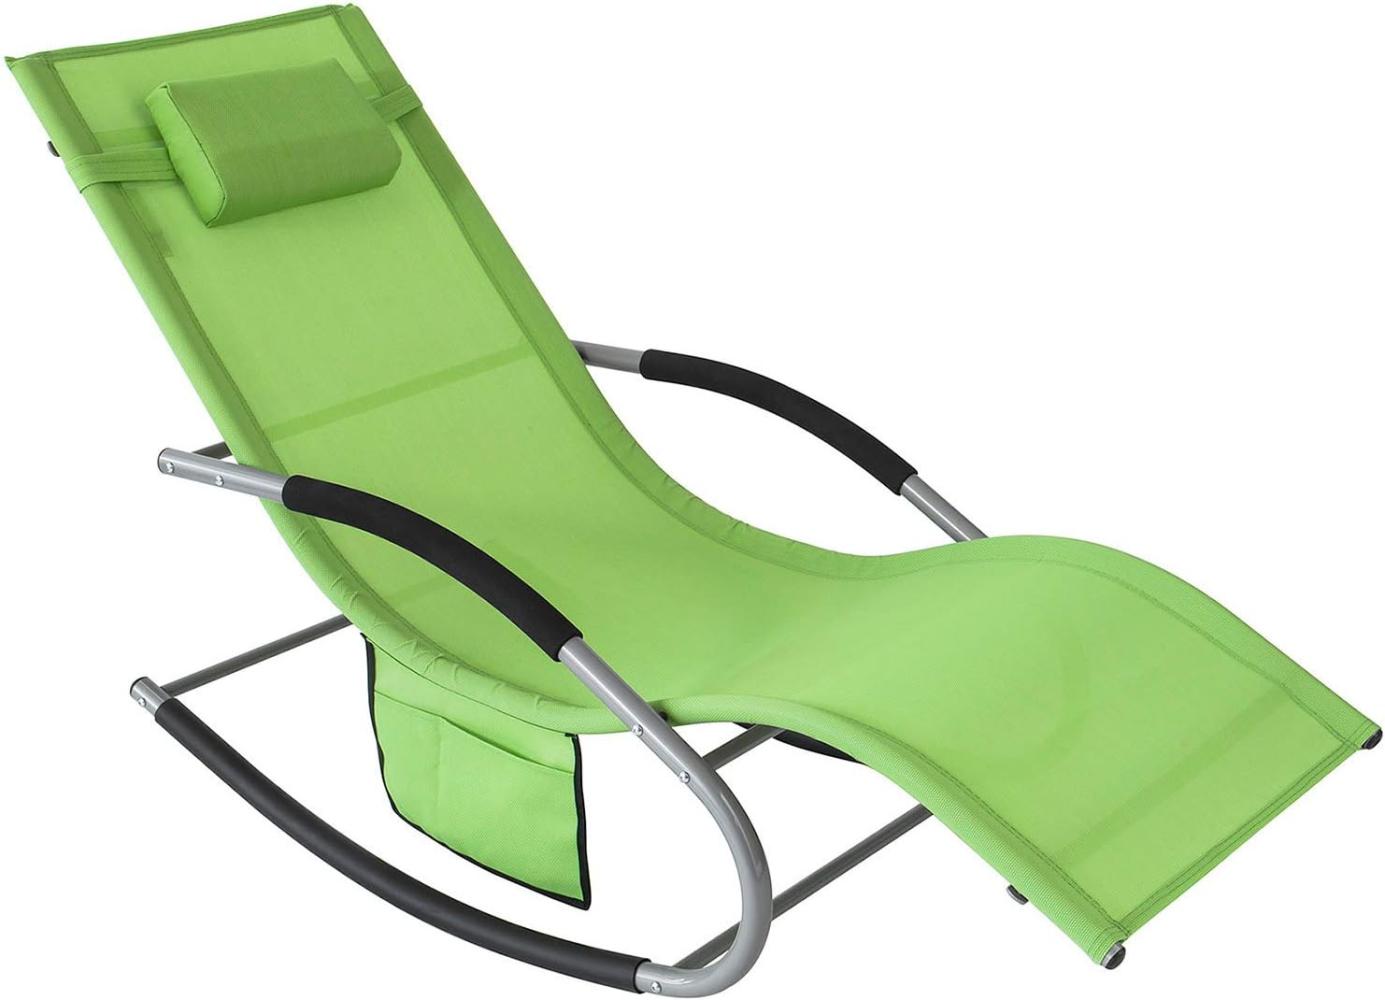 SoBuy OGS28-GR Swingliege Schaukelliege Sonnenliege Liegestuhl Relaxliege Gartenliege mit Tasche Gewebe in grün 150 kg Belastung Bild 1